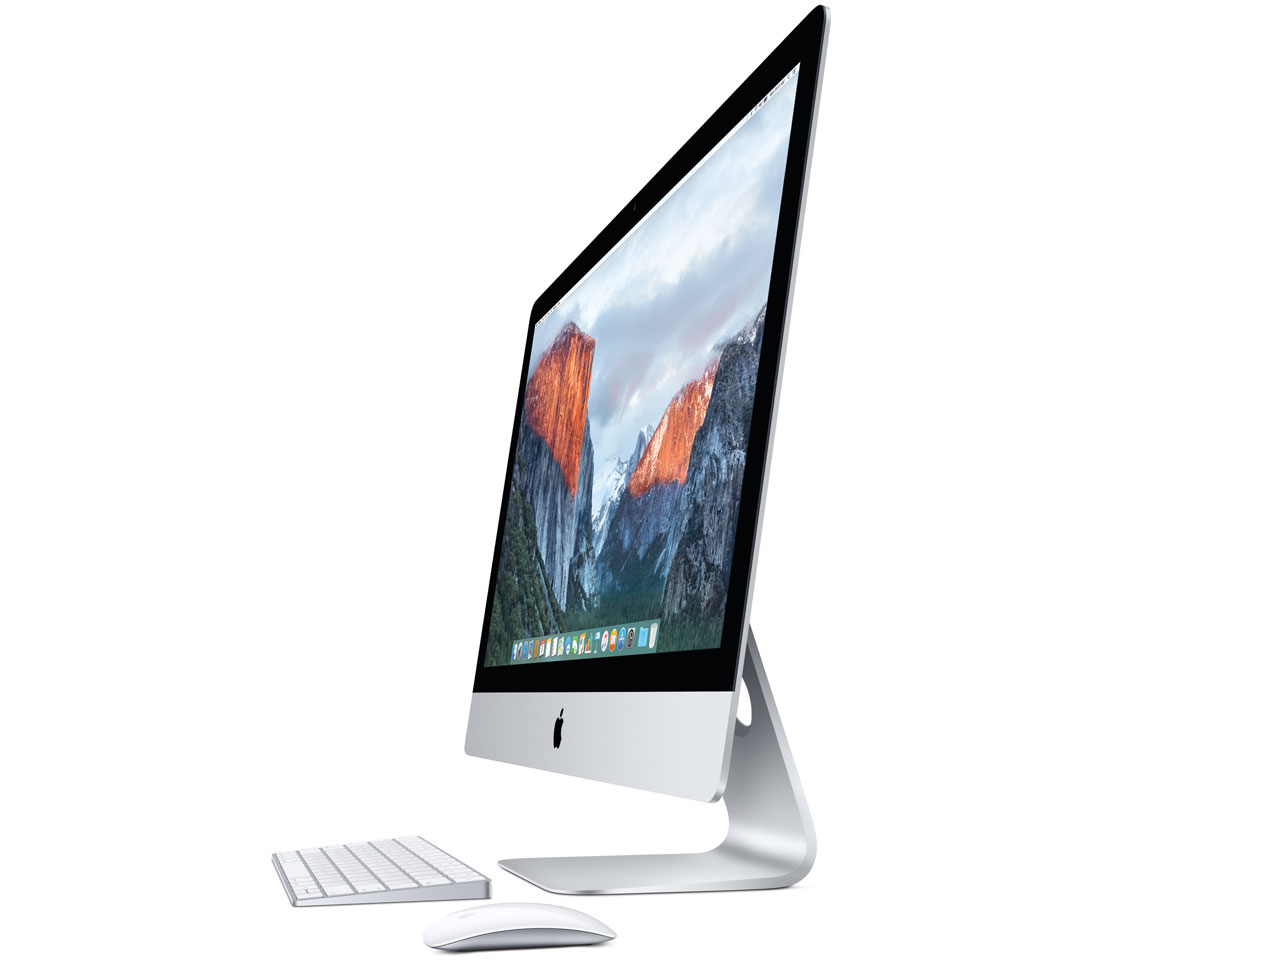 中古iMac Retina 5K intel Core i5 3.2GHz(4コア) 27インチ Silver OS10.12 起動モデル (2015/10)MK462J/A